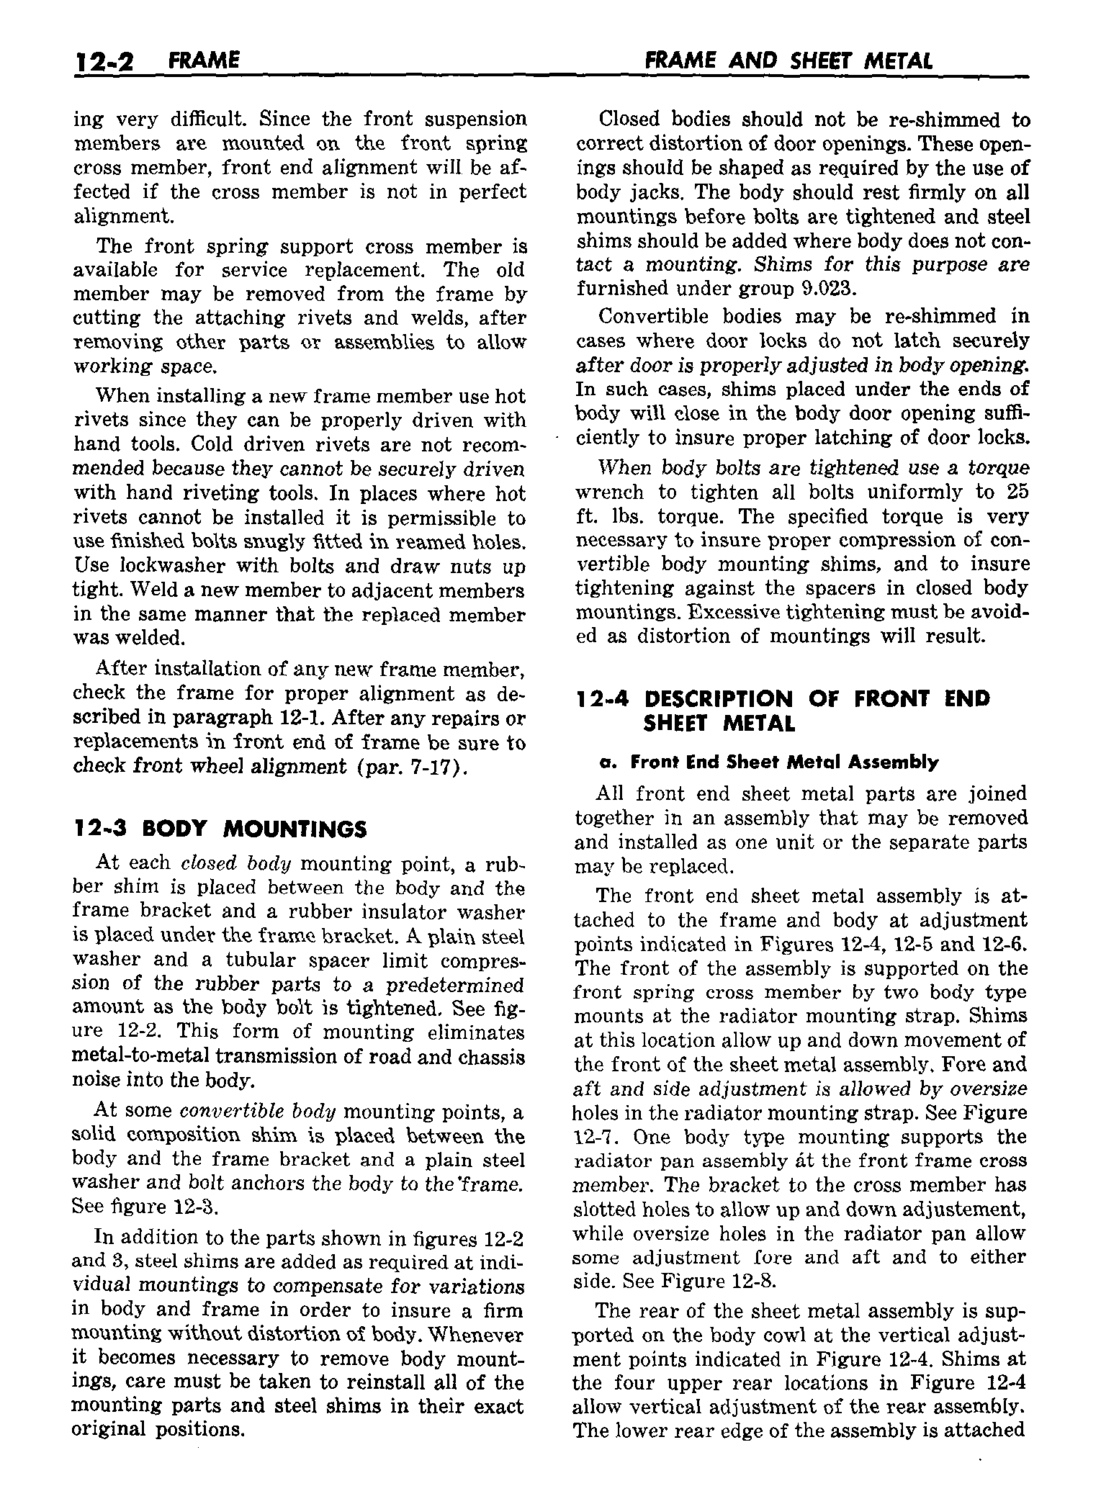 n_13 1959 Buick Shop Manual - Frame & Sheet Metal-002-002.jpg